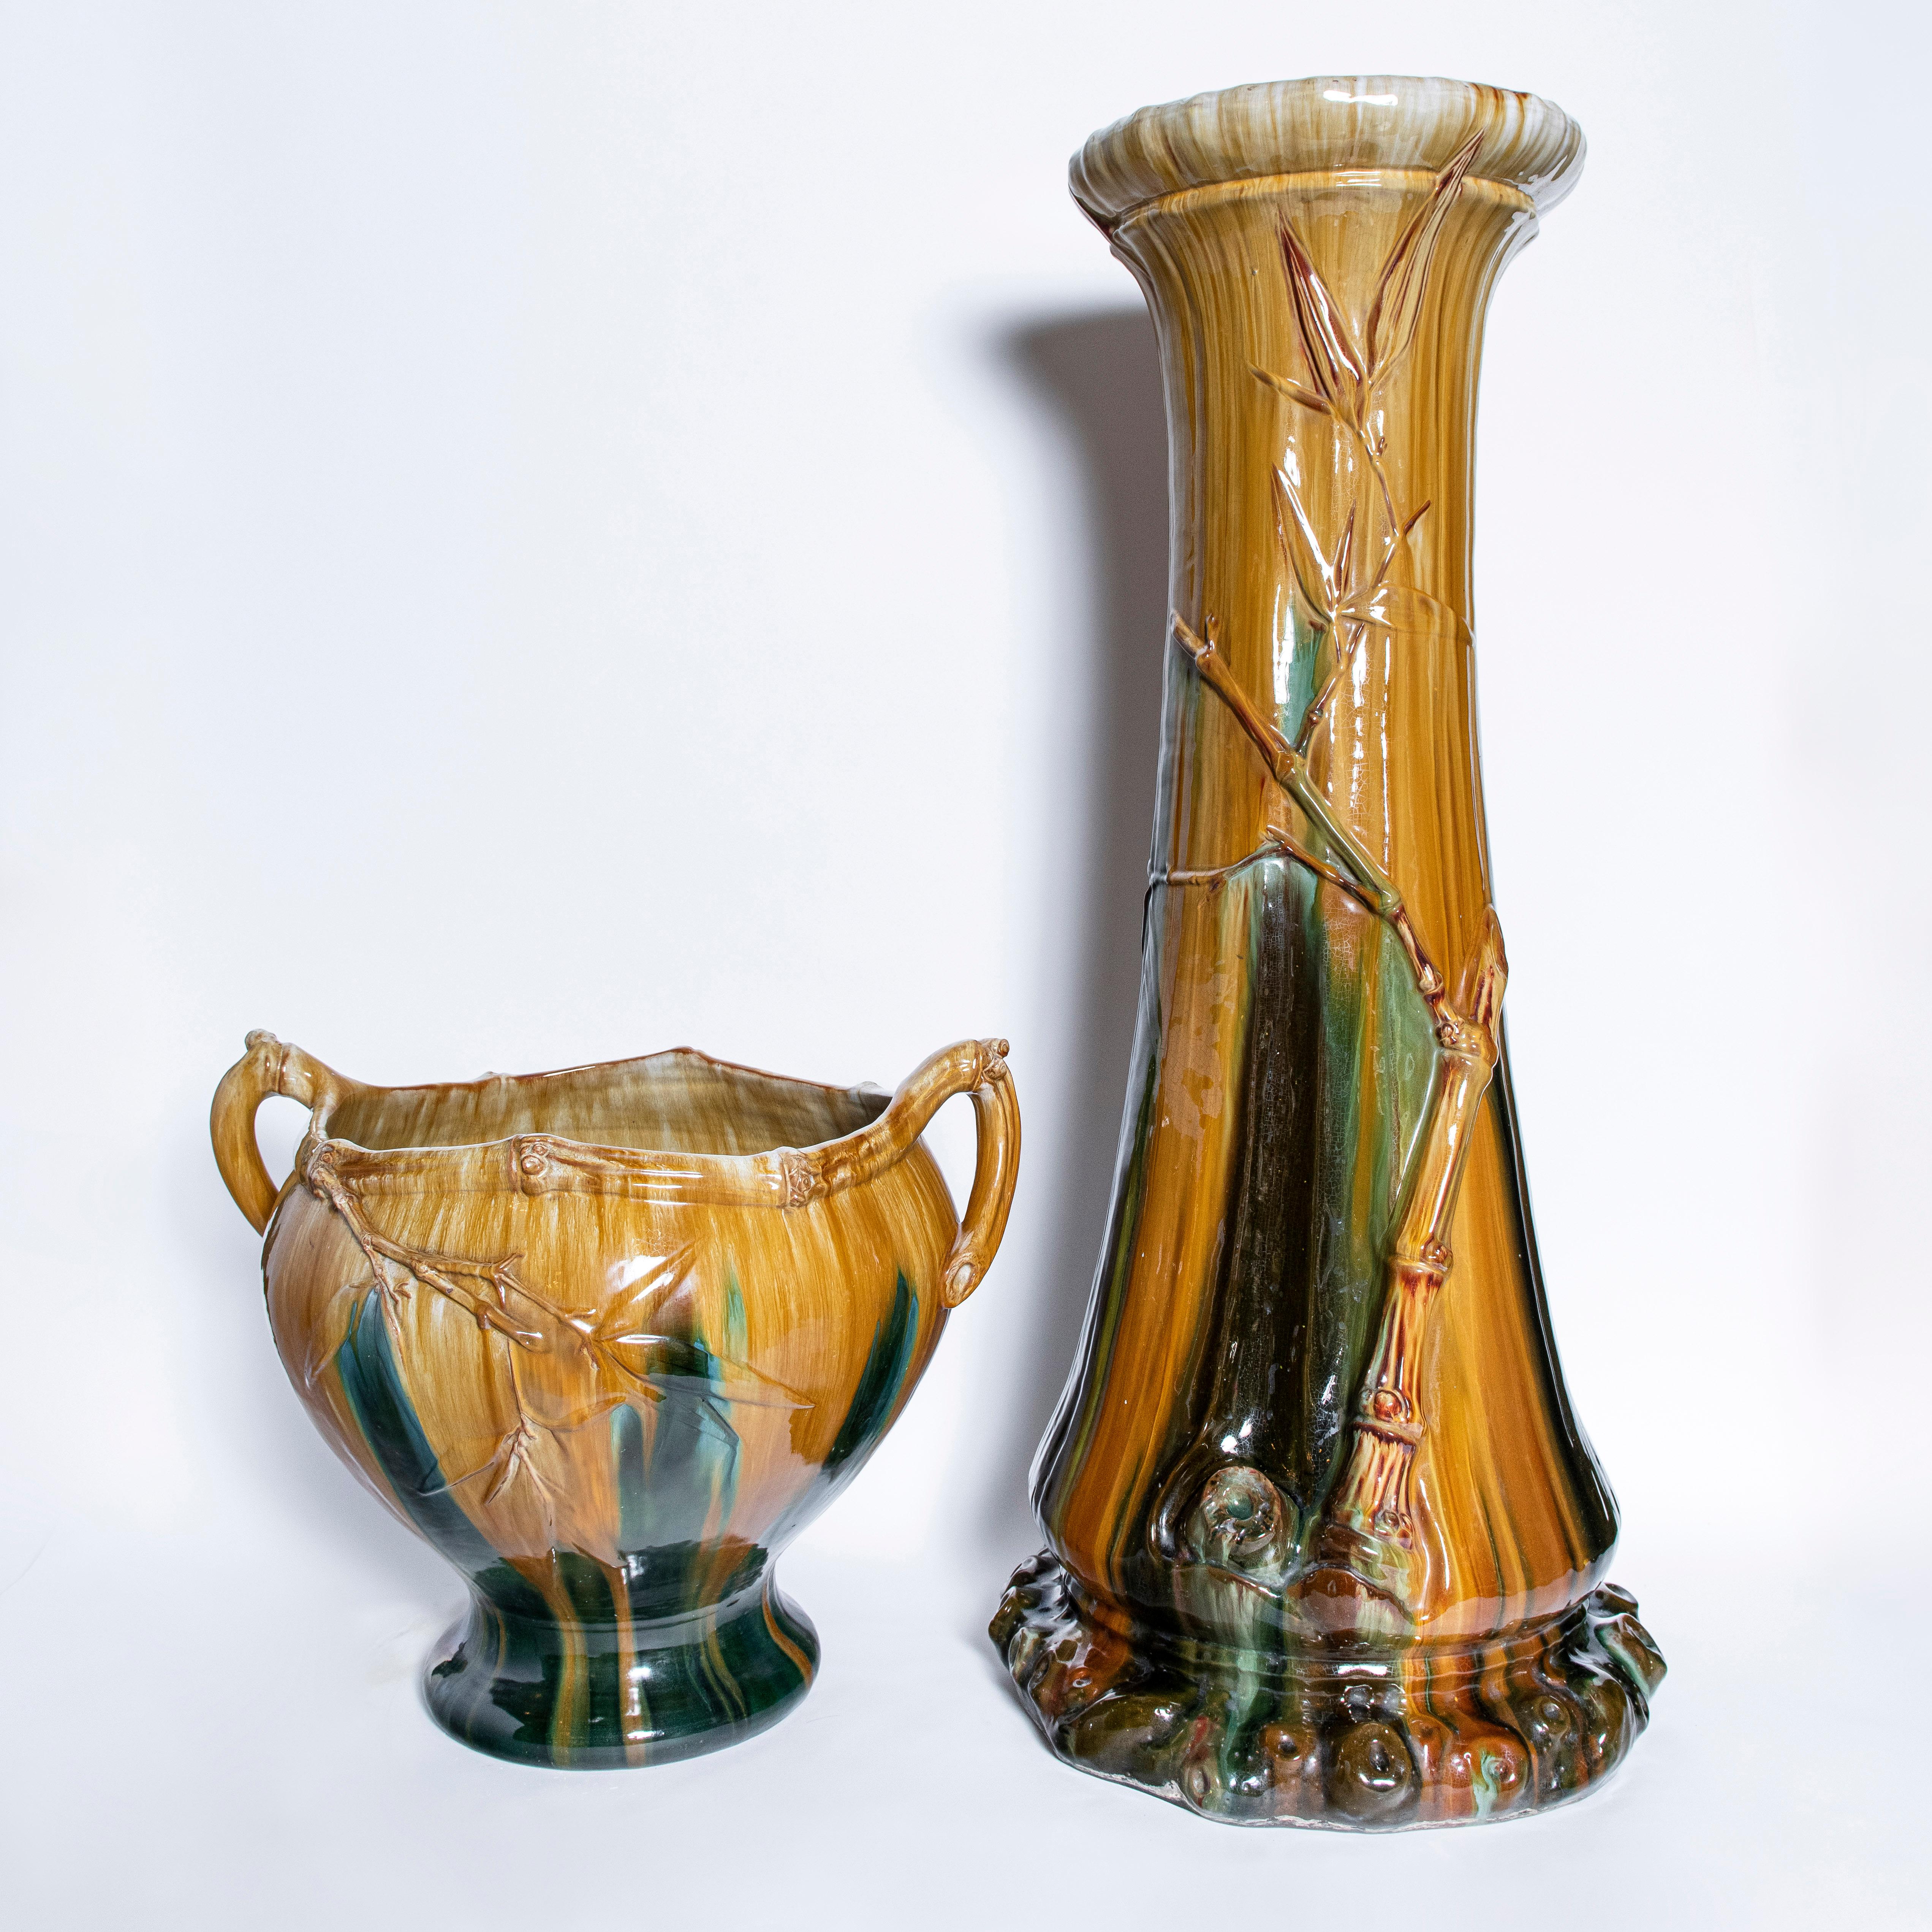 Enameled Pair of Enamel Ceramic Planters, Art Nouveau Period, France, circa 1900 For Sale